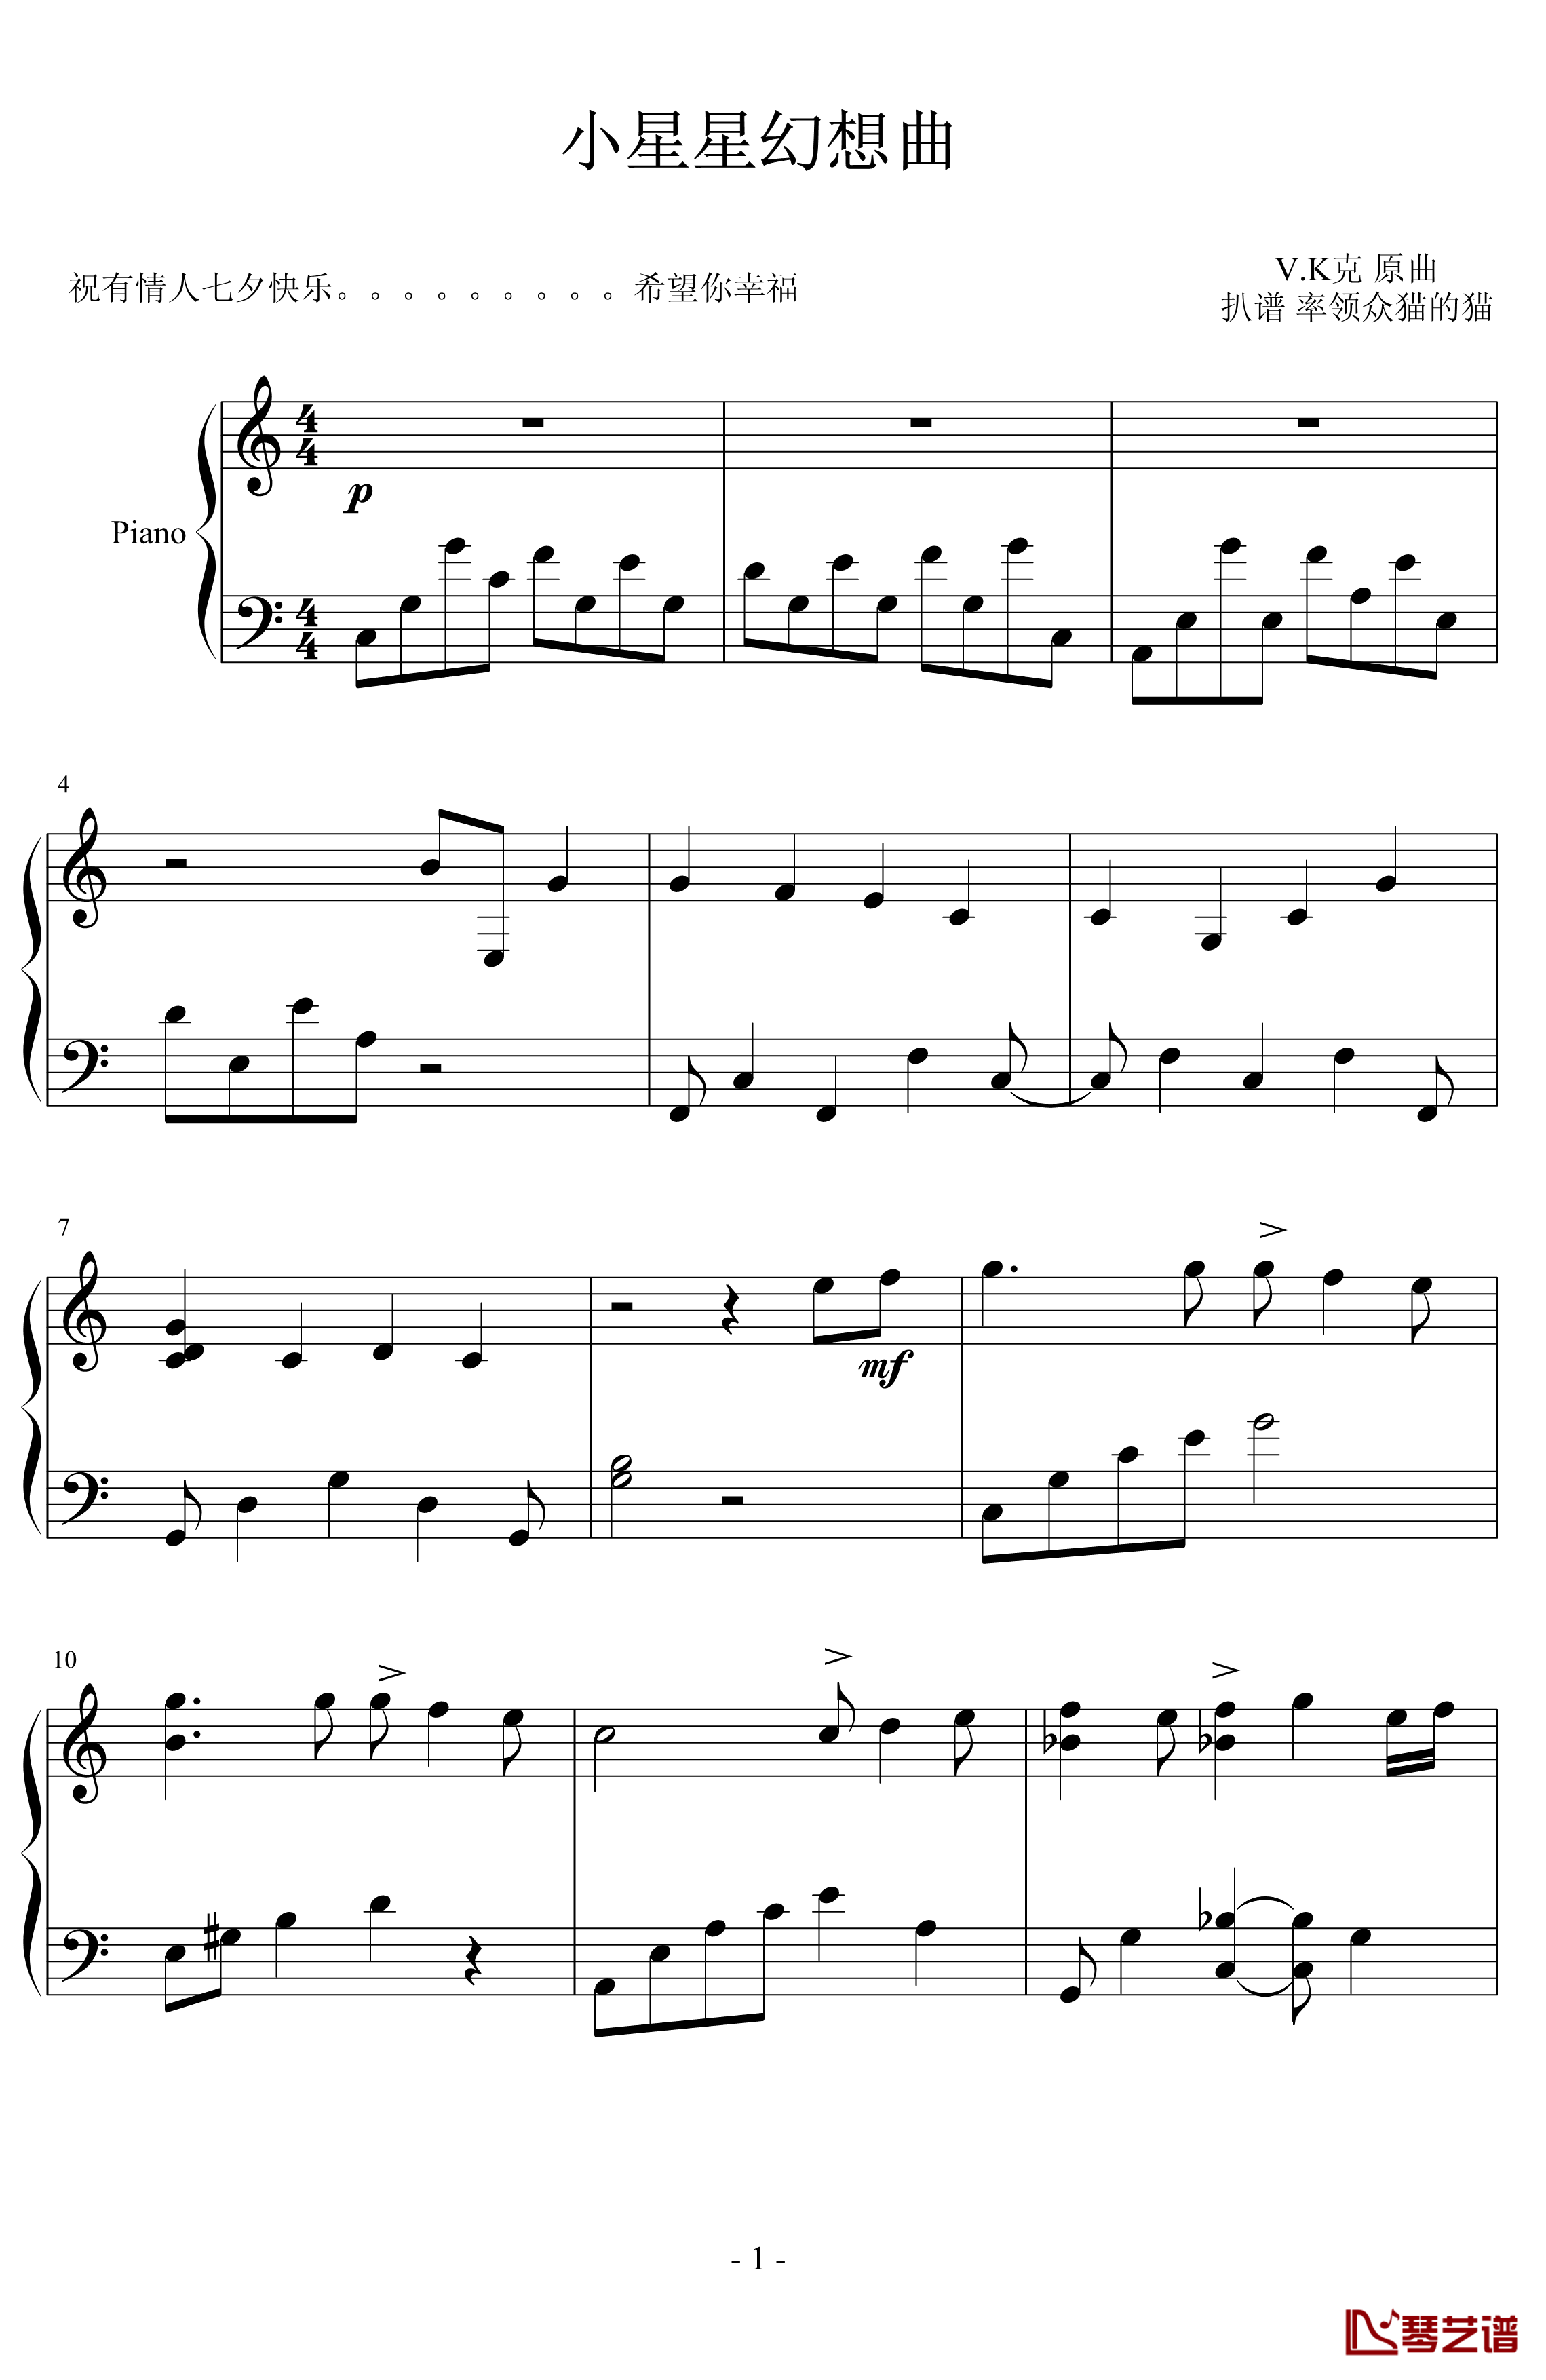 小星星幻想曲钢琴谱-V.K克1